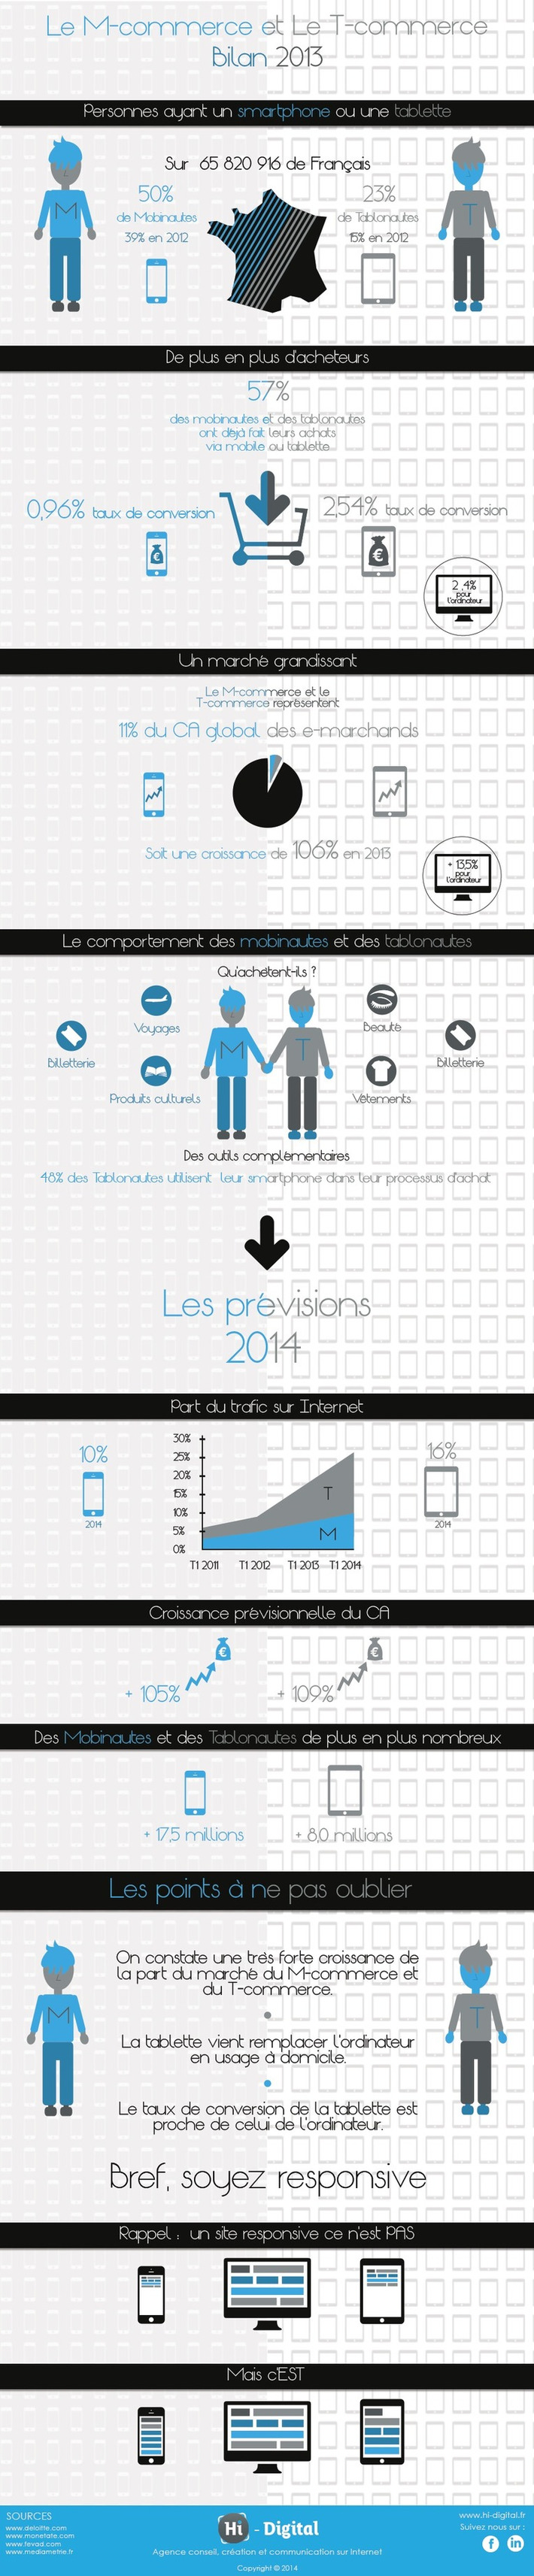 Infographie : le e-commerce sur tablette en hausse de 106% ! | Digitalisation & Distributeurs | Scoop.it